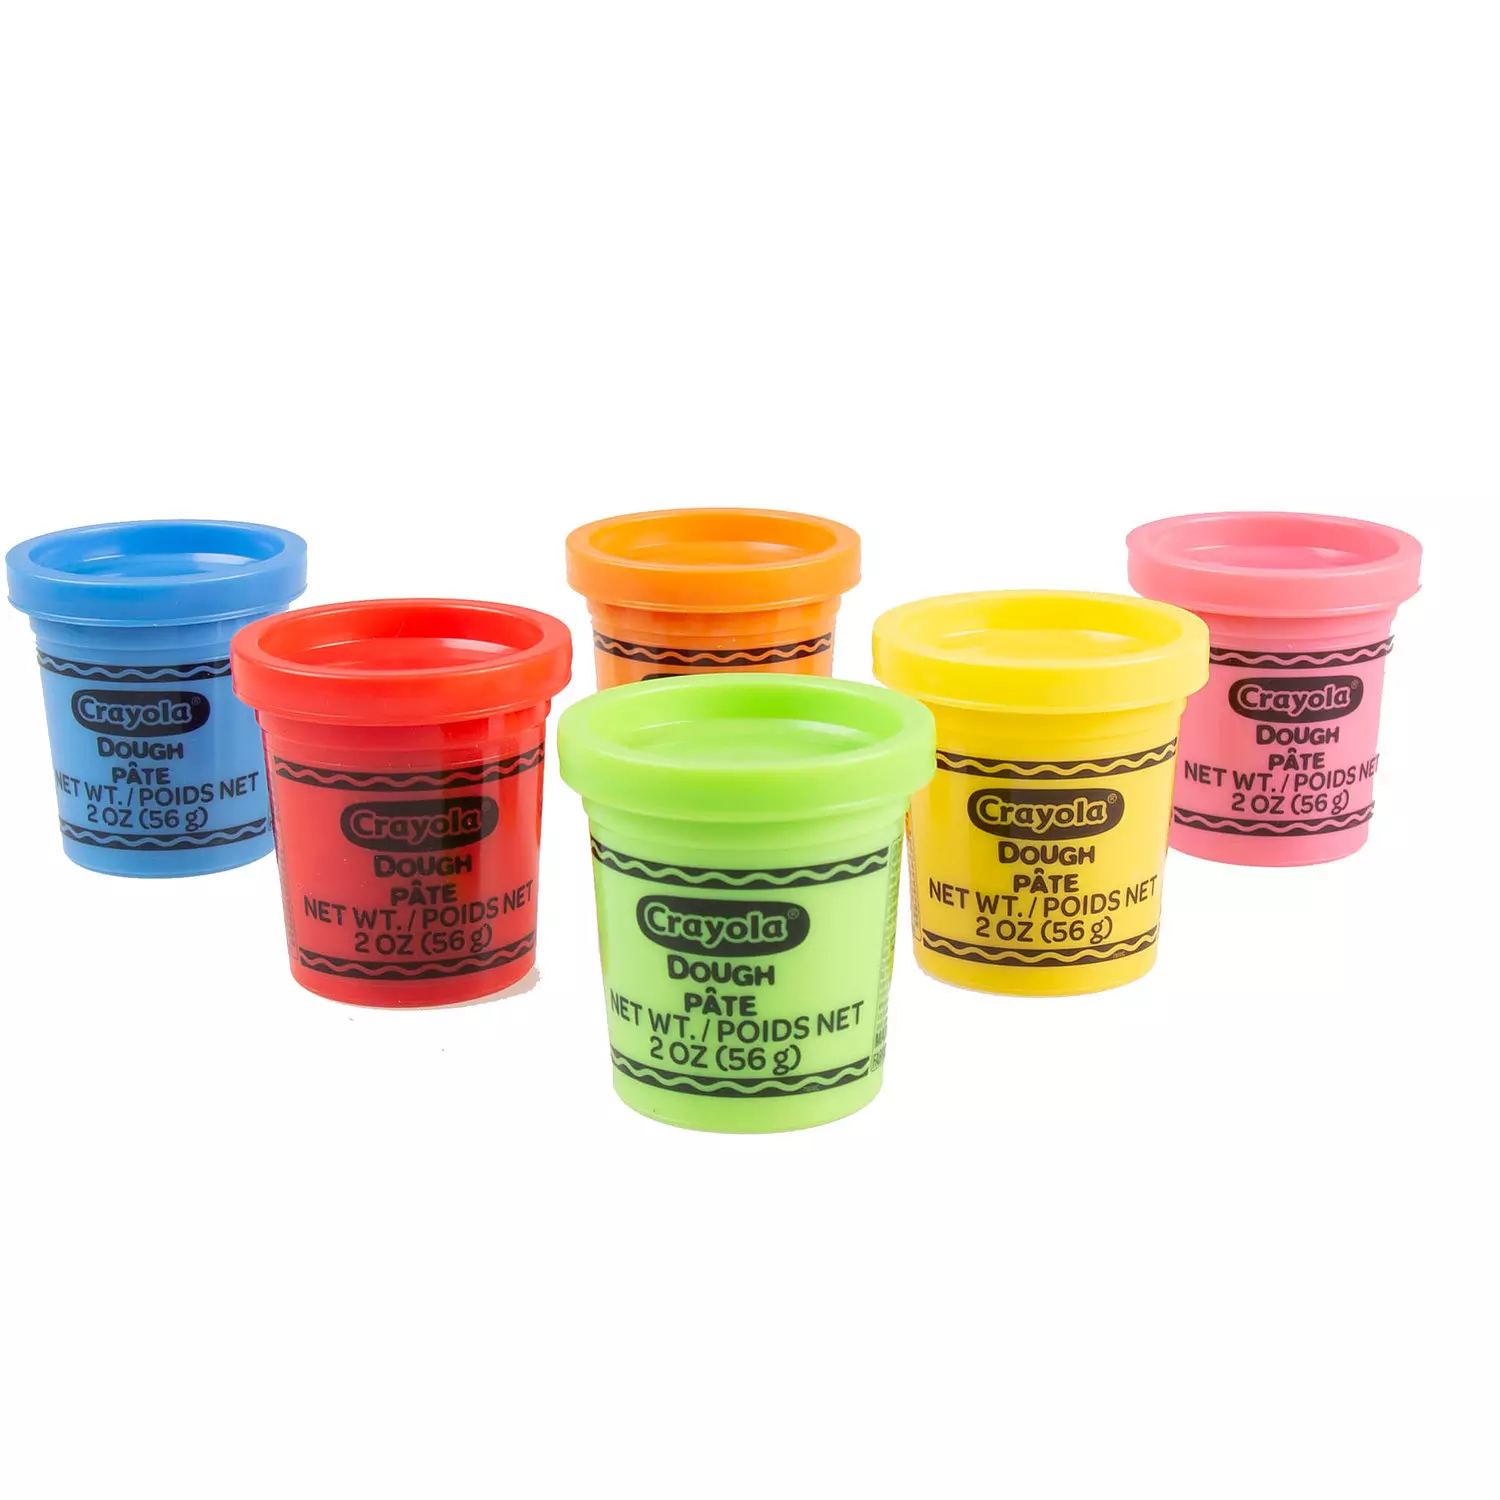 Crayola Silly Scents Kit d'activités de pâte à modeler + rangement | 4 pots  de pâte parfumée de 56,7 g + outils de sculpture + récipient de rangement